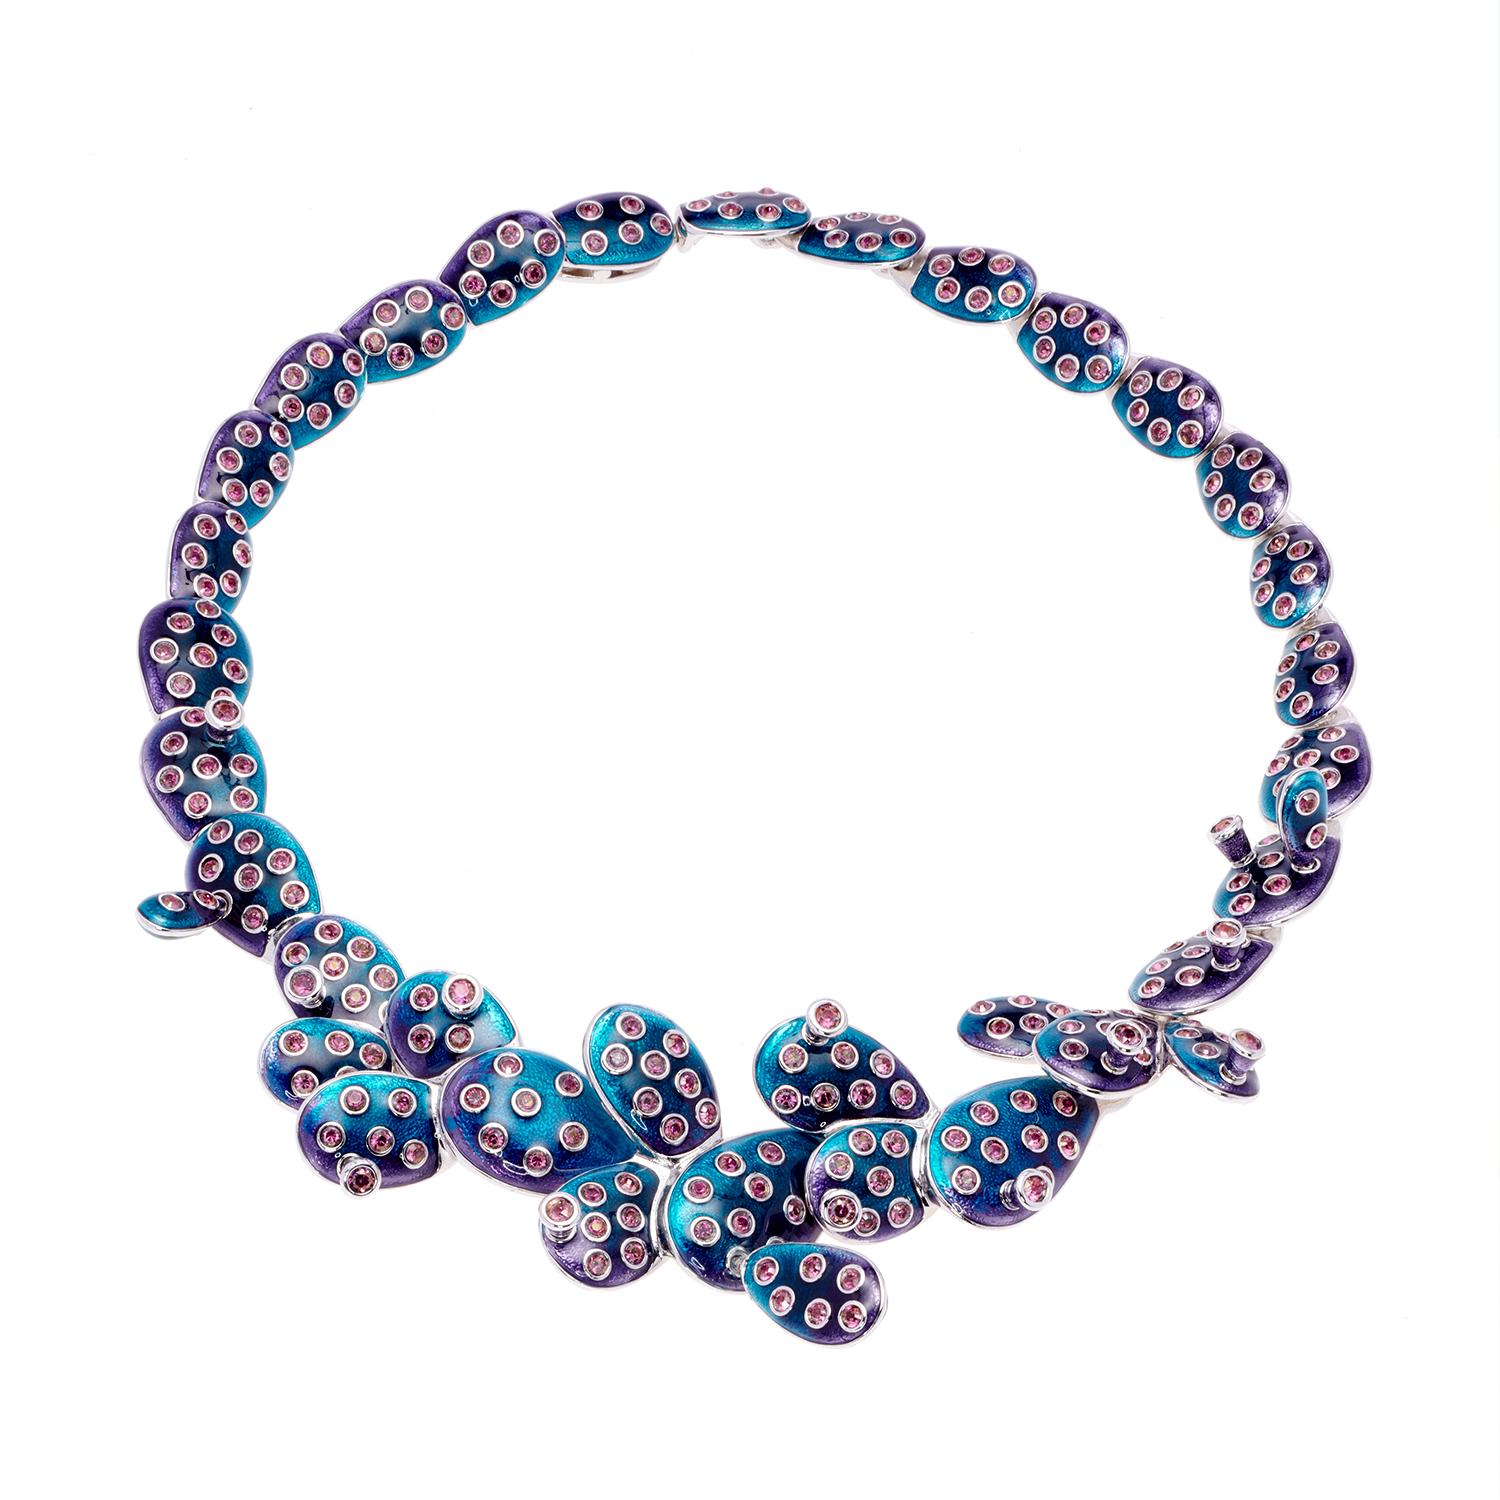 Contemporary Simon Harrison Blue Ombre Enamel Frida Kahlo Cactus Necklace For Sale